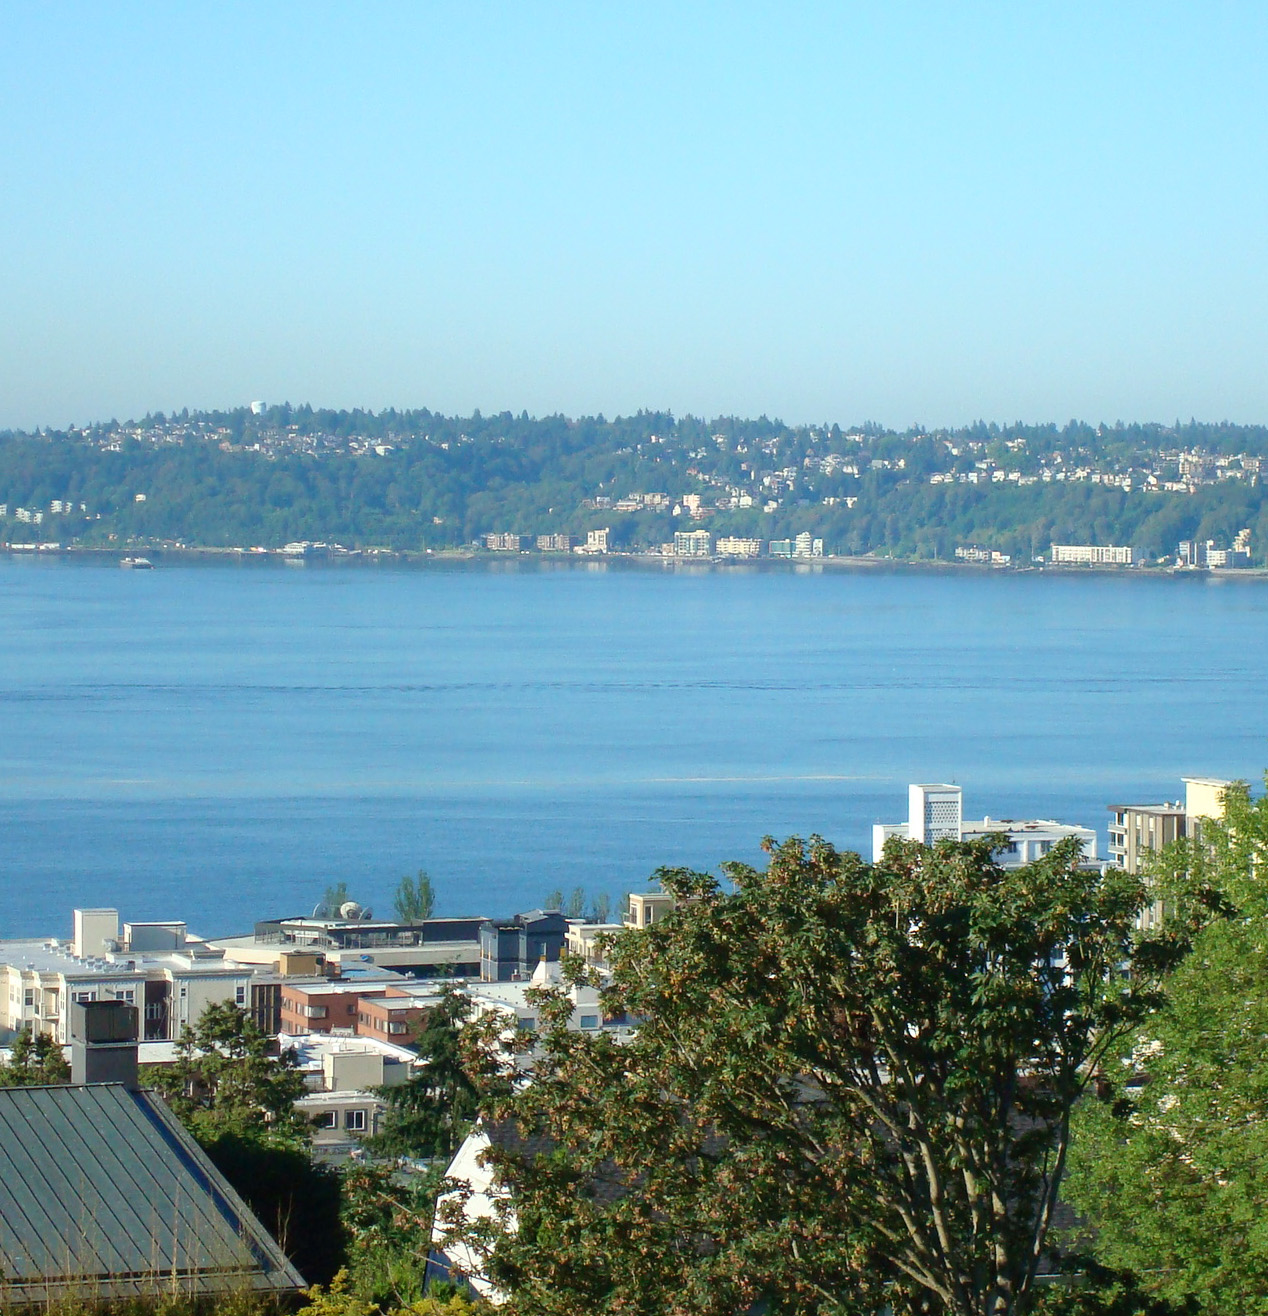 West Seattle skyline, which features Alki Beach. 